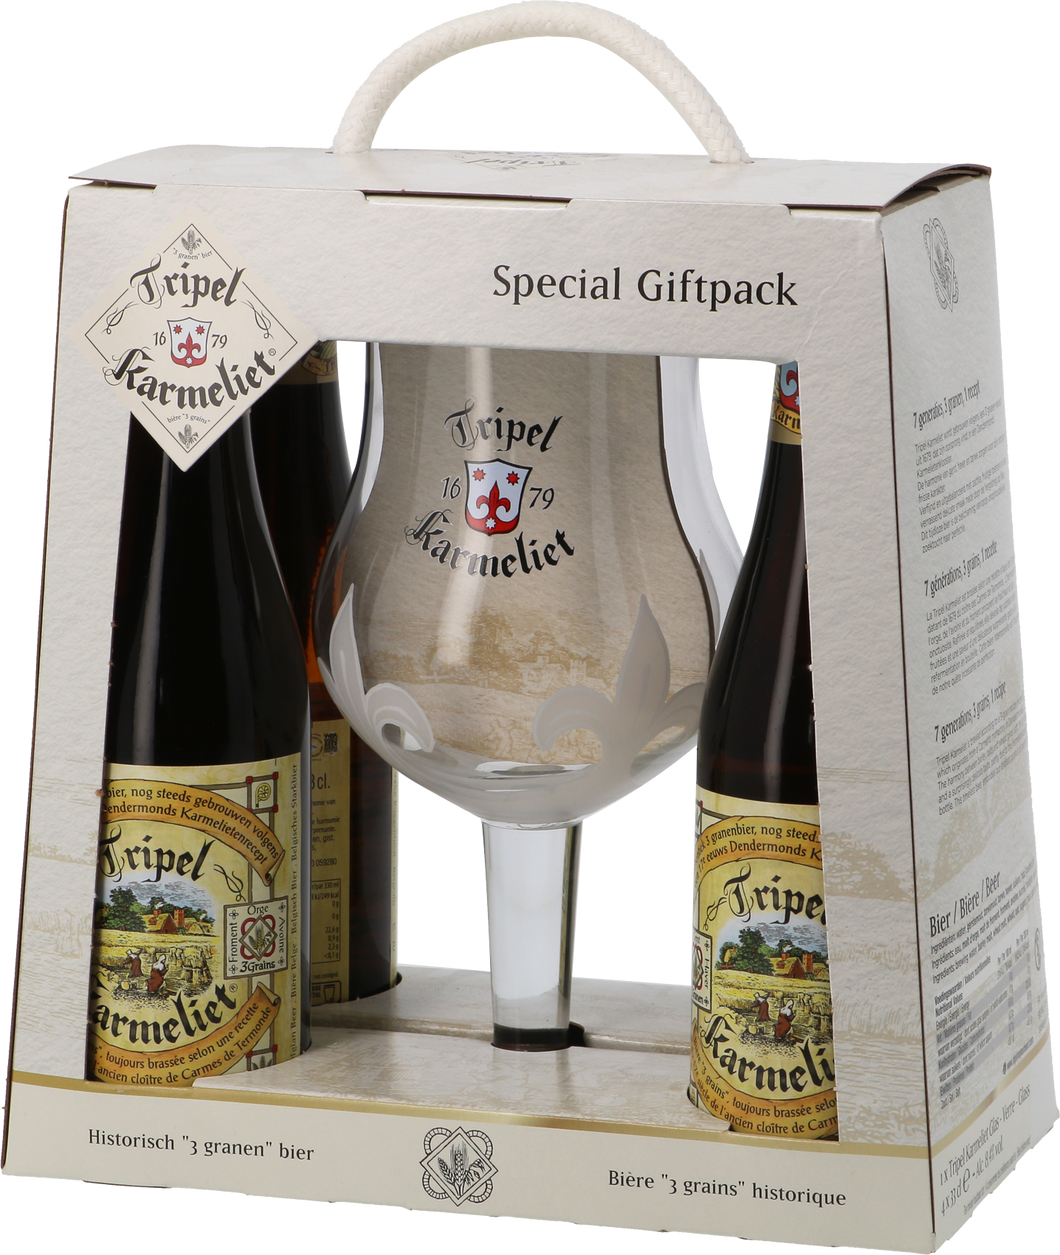 Tripel Karmeliet Gift Set - Brouwerij Bosteels - Belgian Tripel, 8.4%, 4x330ml Bottles & Glass Gift Set